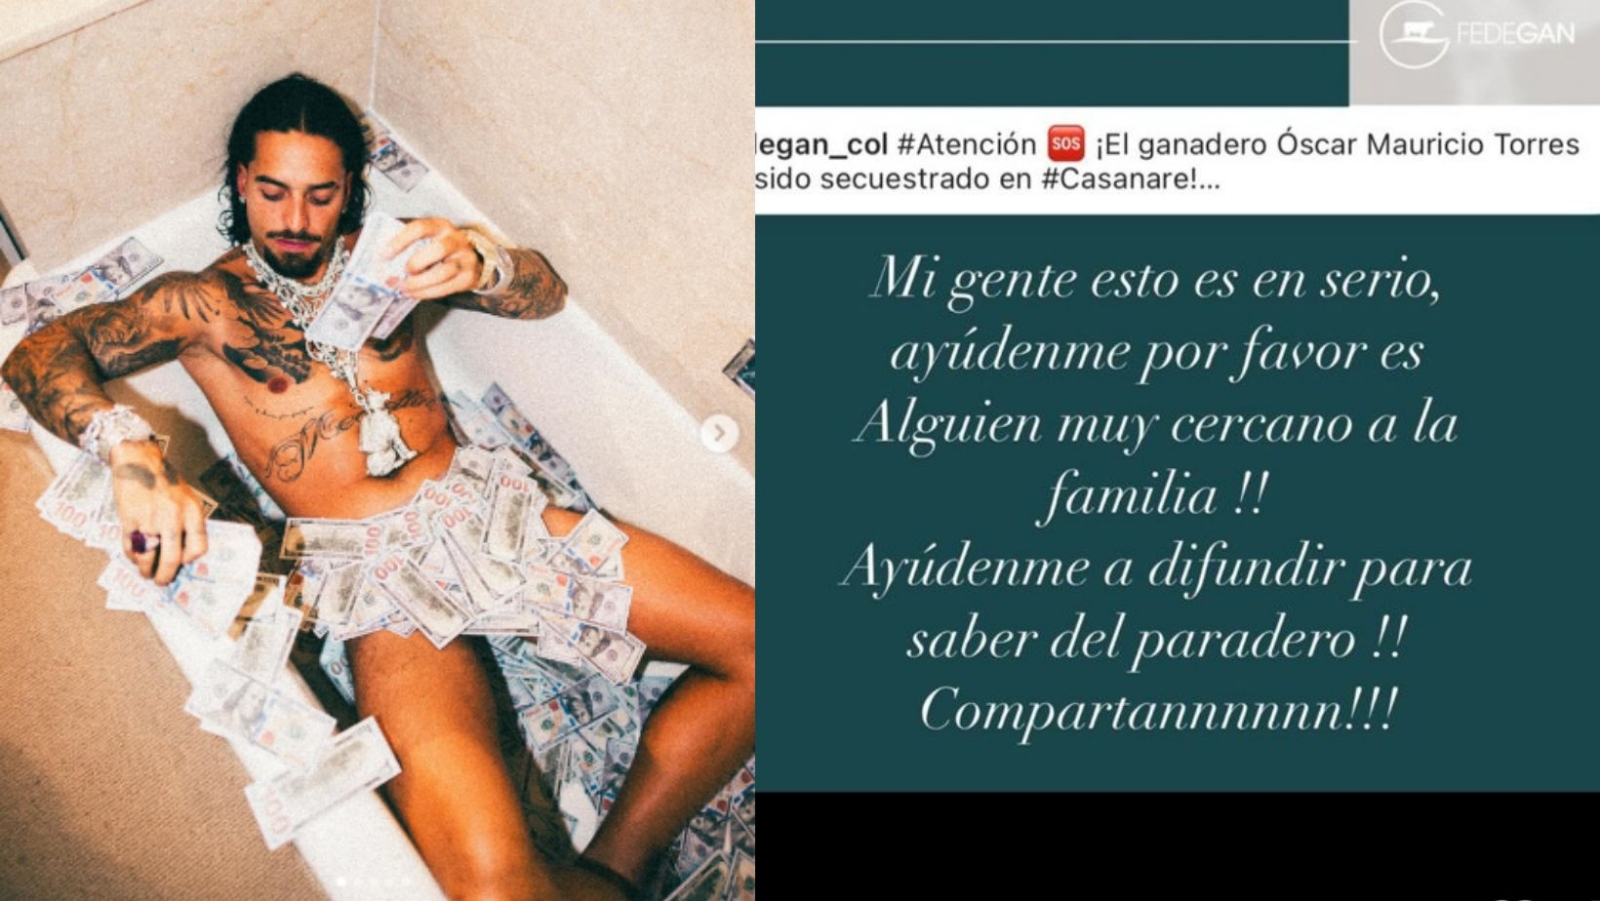 Maluma es criticado en redes por presumir lujos antes del secuestro de su amigo